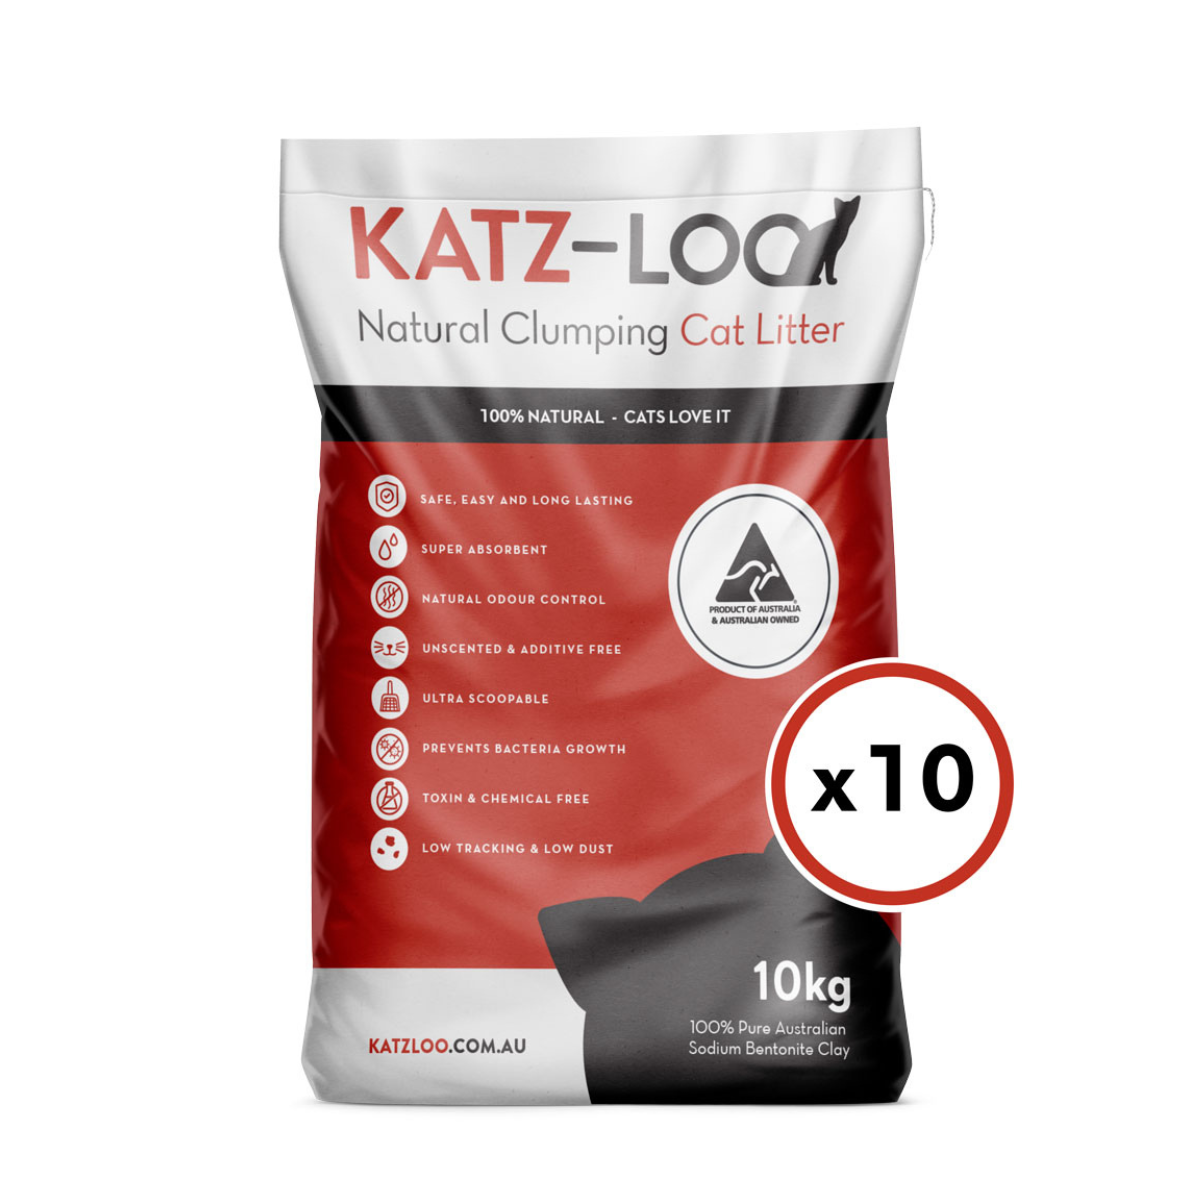 Katz-Loo 10kg bag x 10